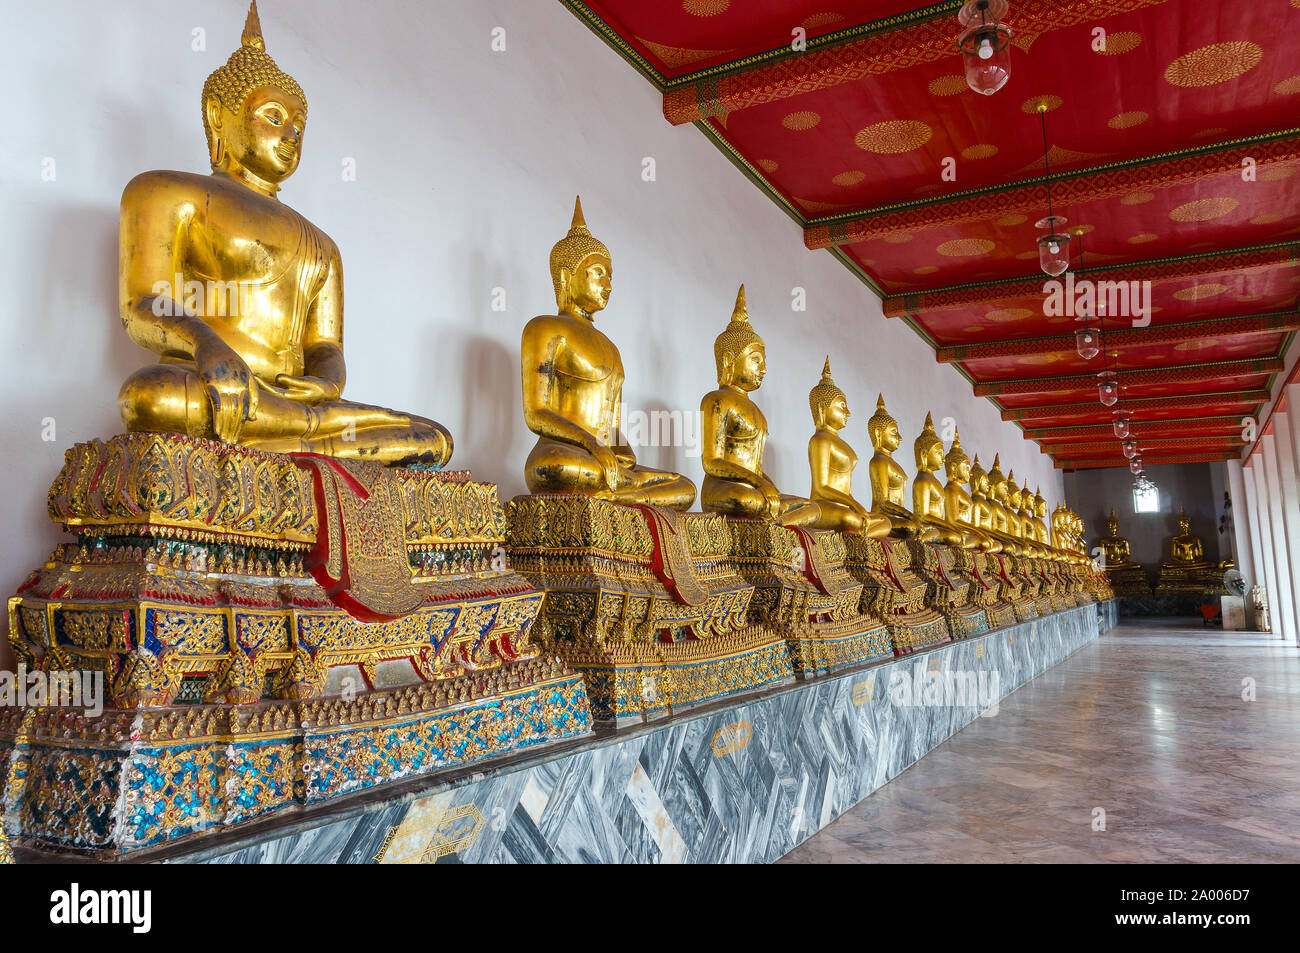 Sitzung goldenen Buddhas. Die Kolonnaden oder Buddha Image Gallery. Goldene Statuen von Buddhas Meditation auf der wunderschön gestalteten Säulen alo Stockfoto